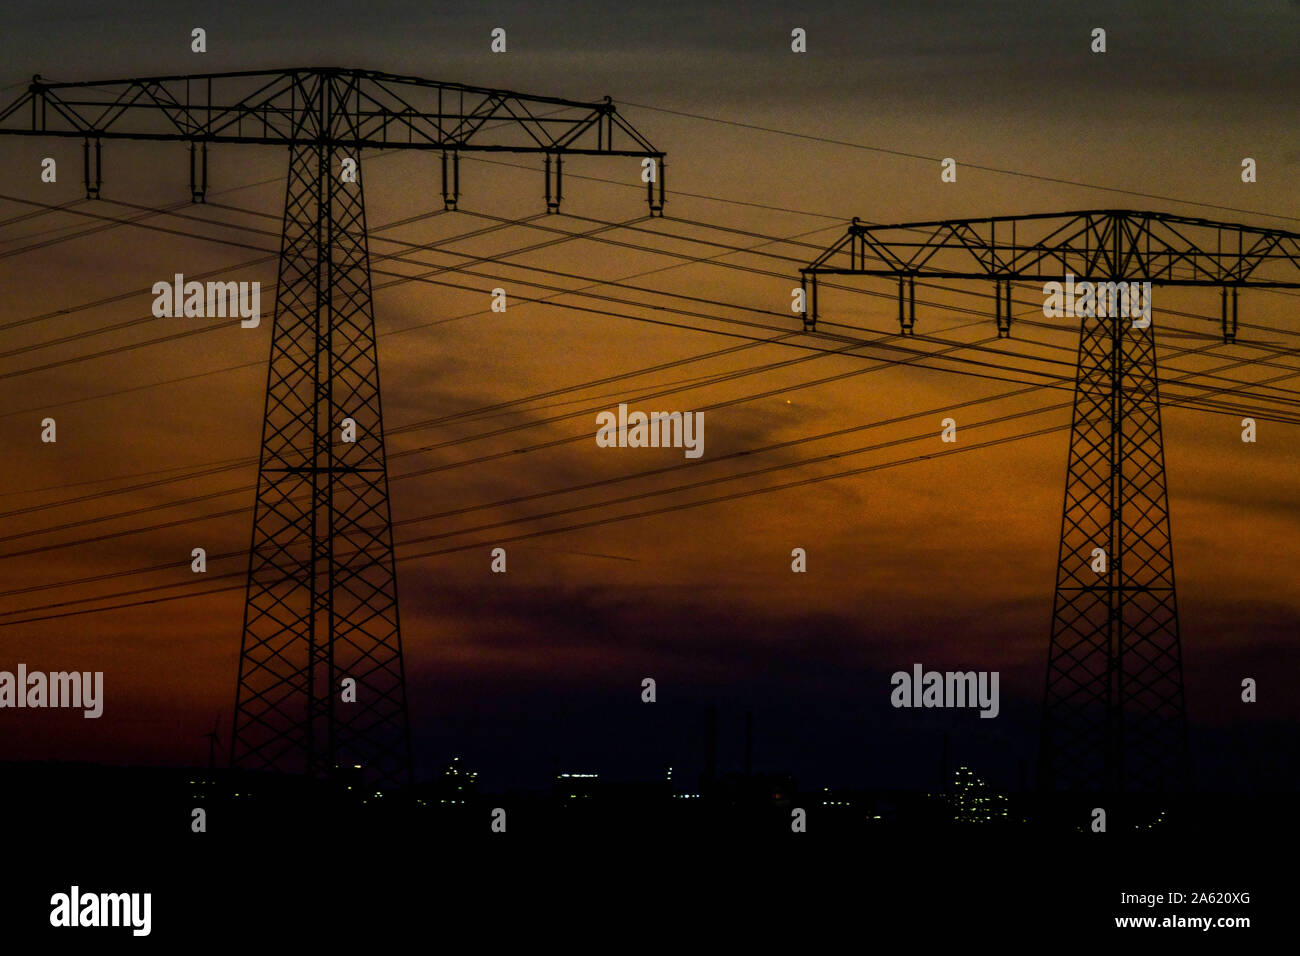 Lignes électriques pylônes la nuit Allemagne fils électriques, transmission, énergie Banque D'Images